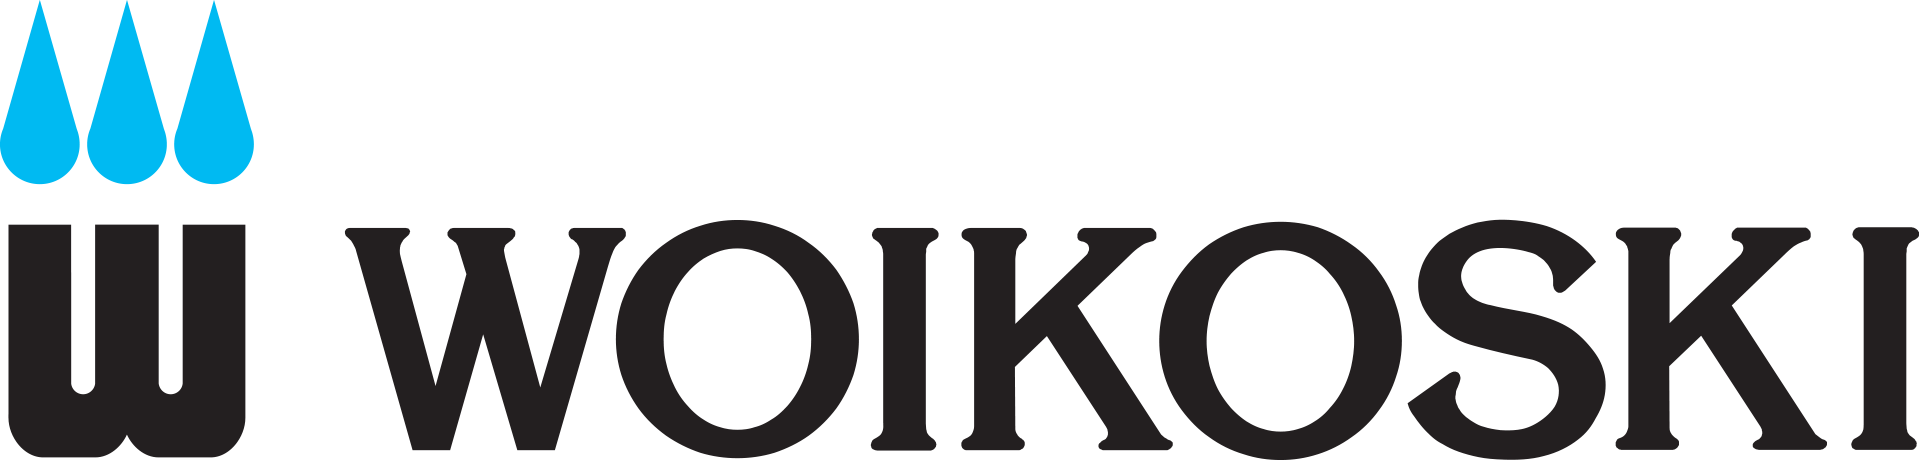 Woikoski logo